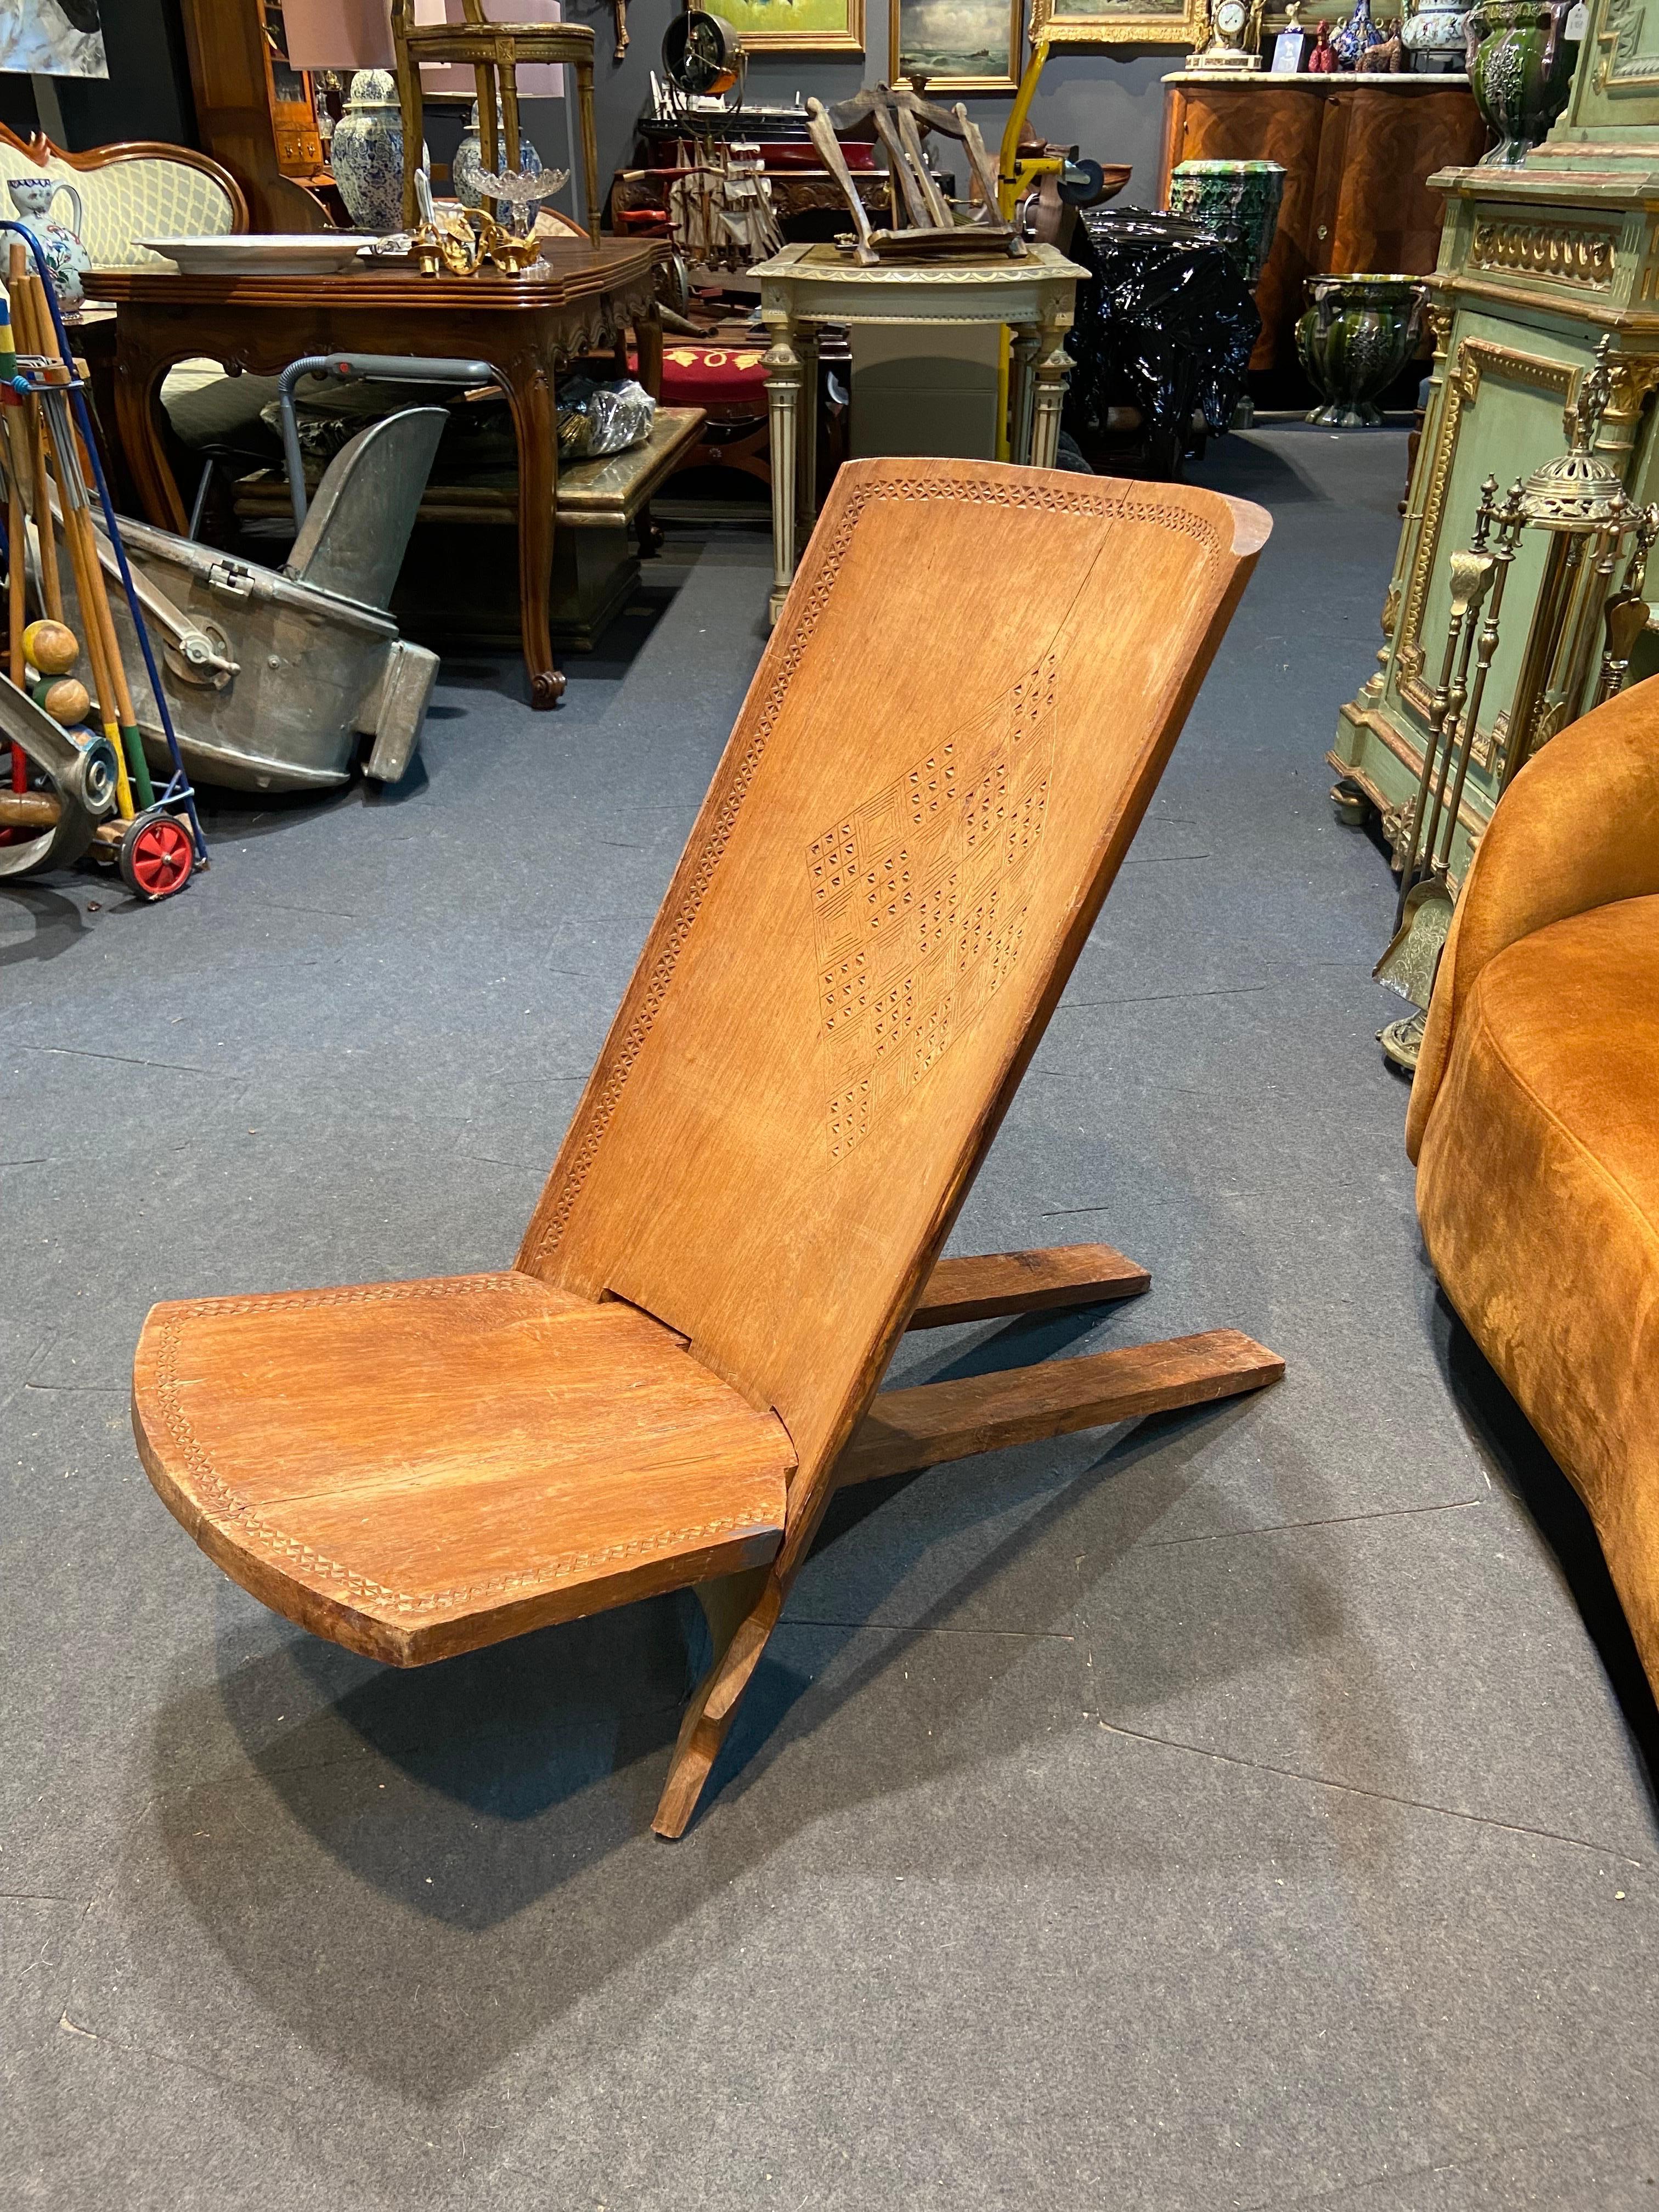 Cette chaise pliante est fabriquée en bois massif et peut être facilement démontée en deux parties. Ce modèle est connu sous le nom de 